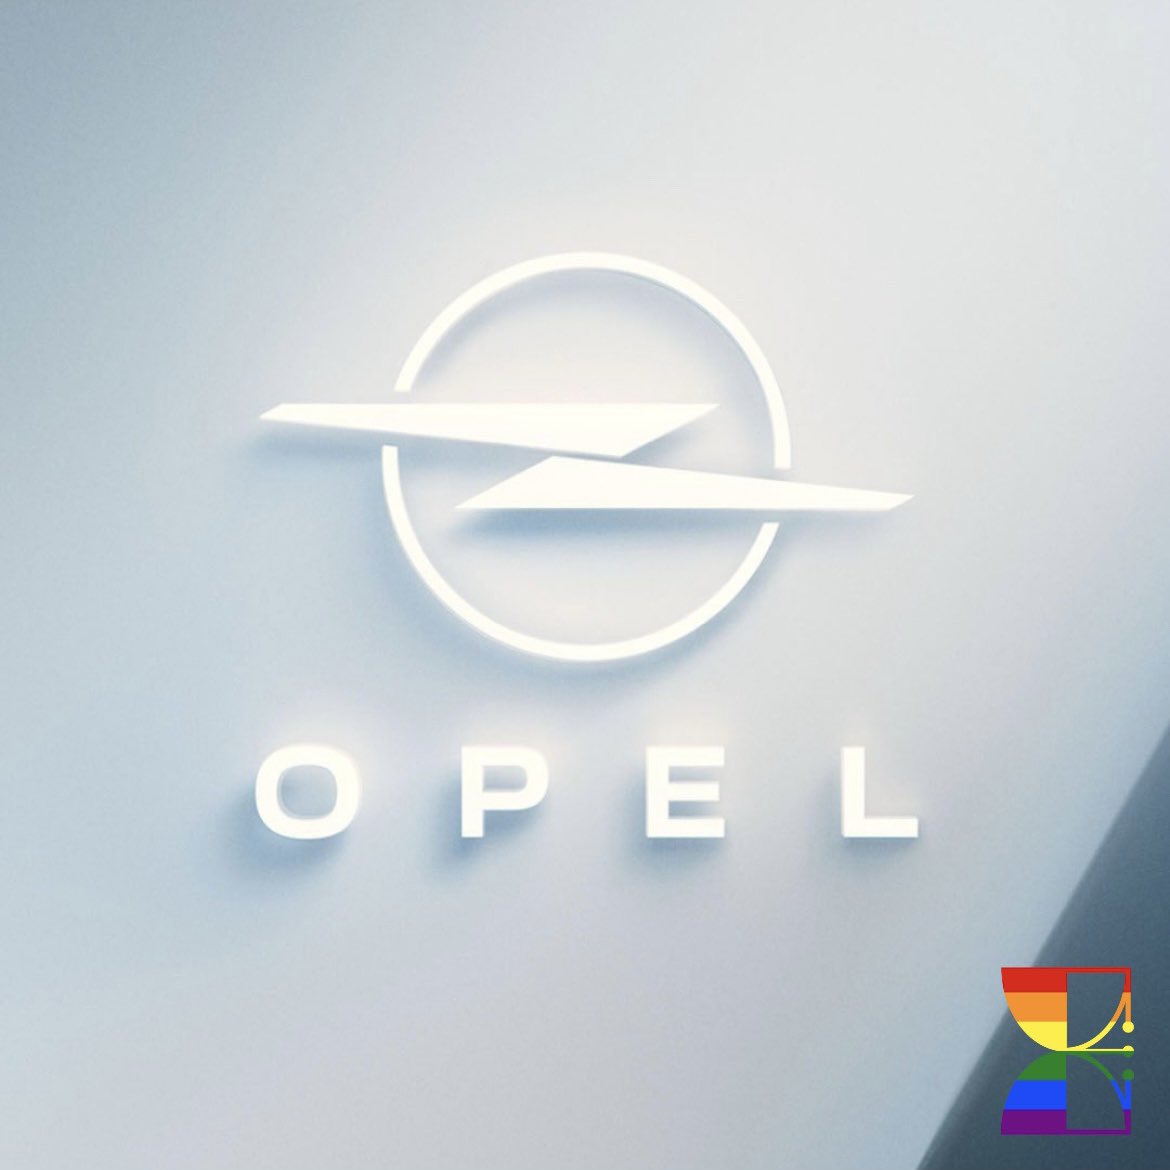 Opel (gruppo Stellantis) ha svelato il suo nuovo logo
-
Una modernizzazione del famoso “Blitz” della casa tedesca, che verrà introdotto nel 2024

#itslogotime #opel #stellantis #automotive #logo #thisisopel #electrification #brand #branding #brandidentity